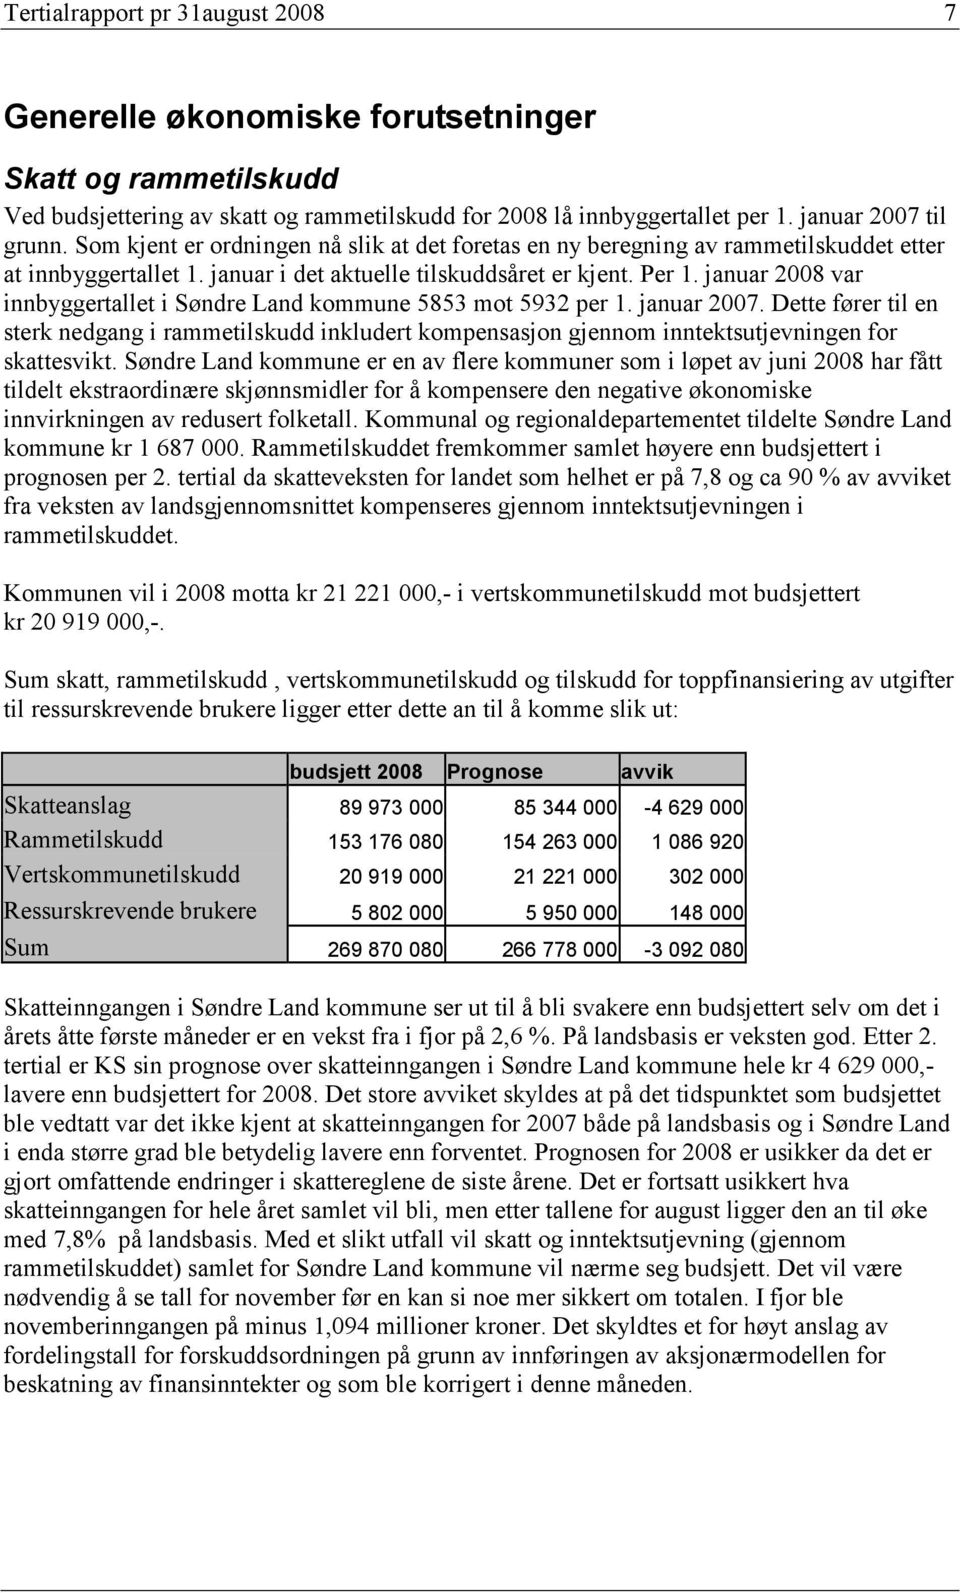 januar var innbyggertallet i Søndre Land kommune 5853 mot 5932 per 1. januar 2007. Dette fører til en sterk nedgang i rammetilskudd inkludert kompensasjon gjennom inntektsutjevningen for skattesvikt.